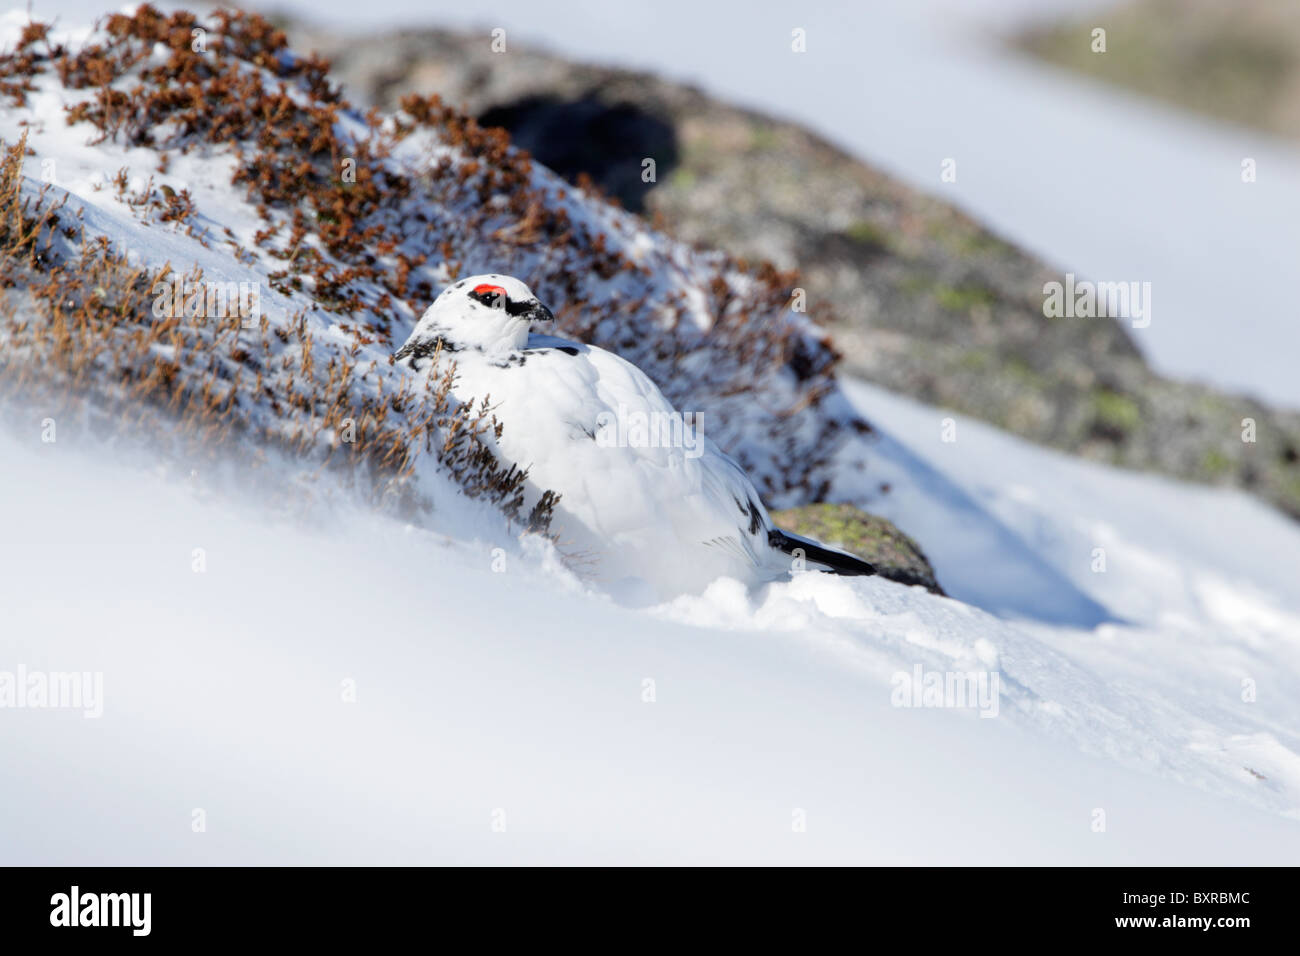 Homme Lapogus rock ptarmigan (muta) montrant le plumage d'hiver dans un creux à l'abri de spindrift sur une colline couverte de neige Banque D'Images